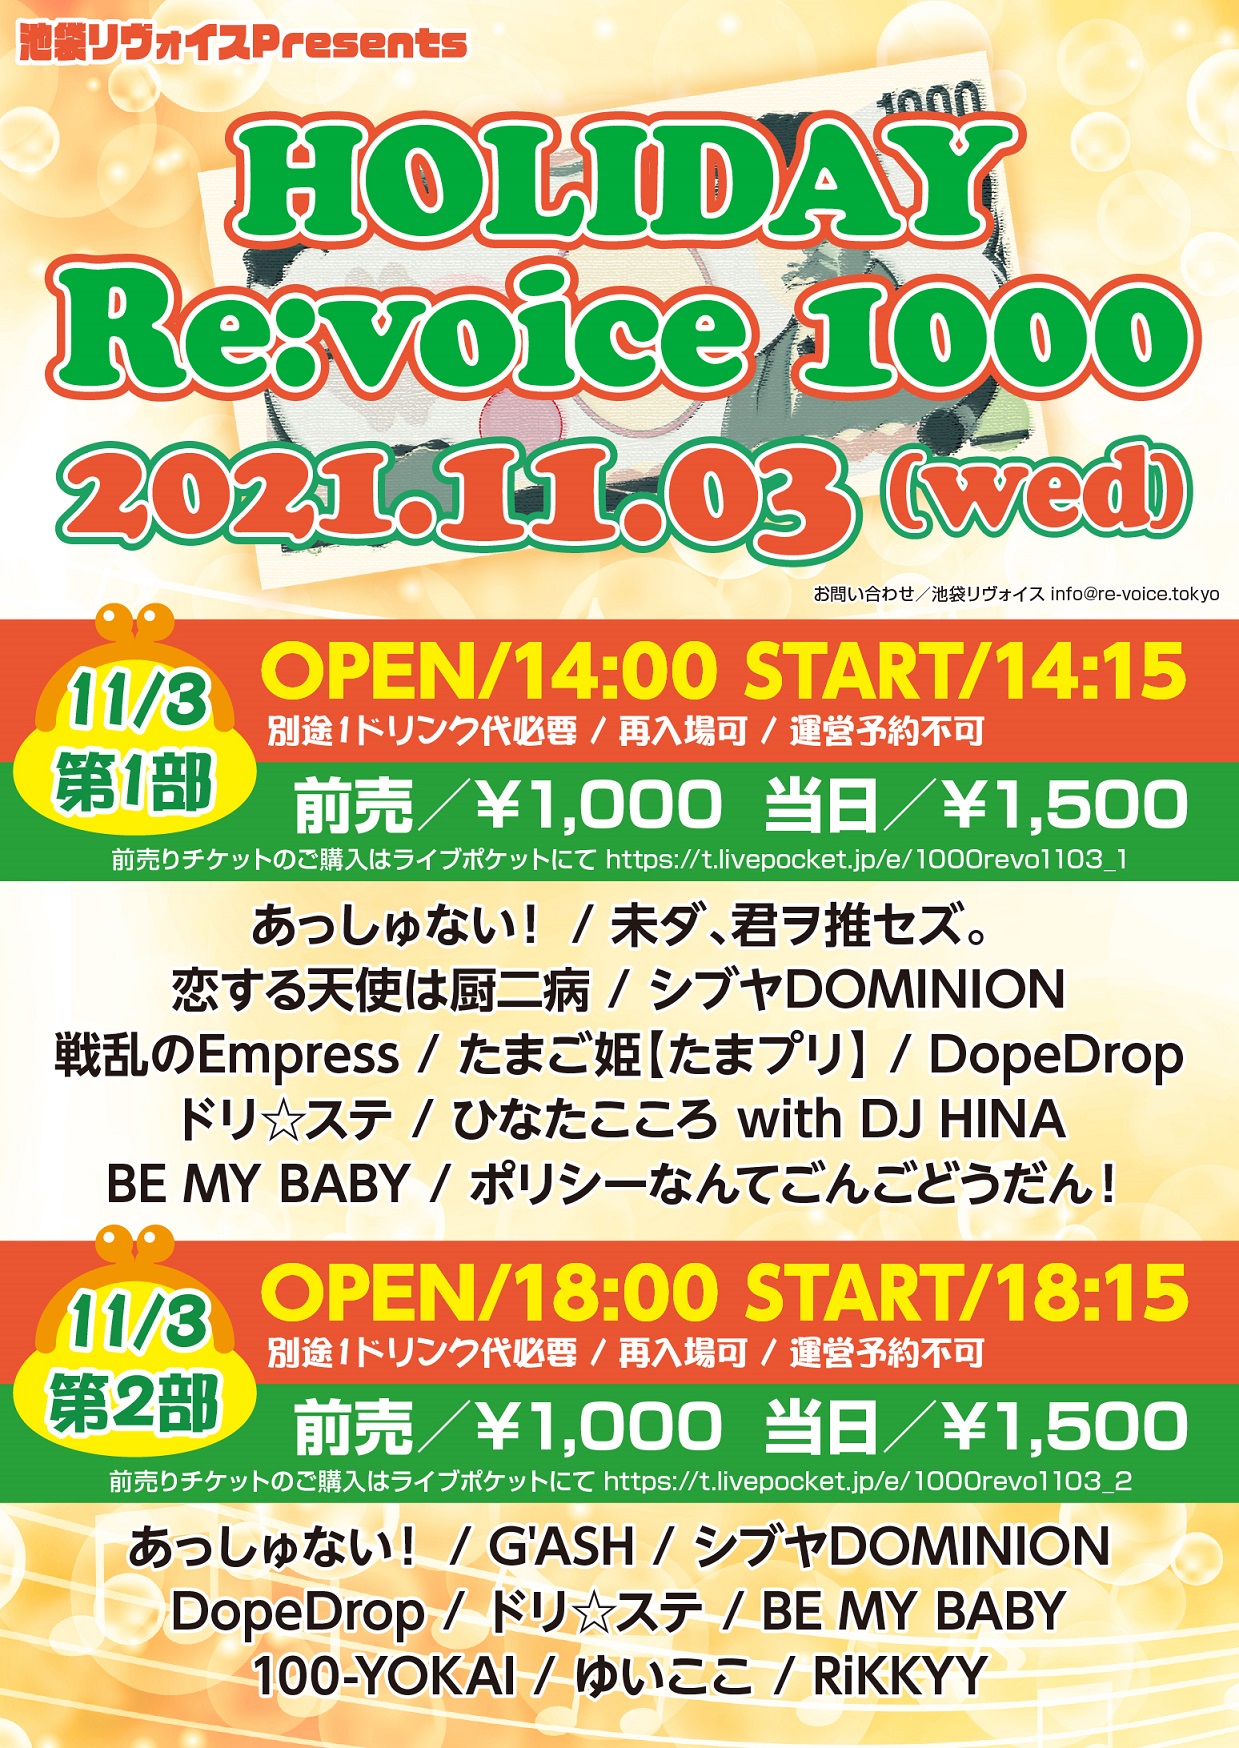 【第二部】HOLIDAY Re:voice 1000